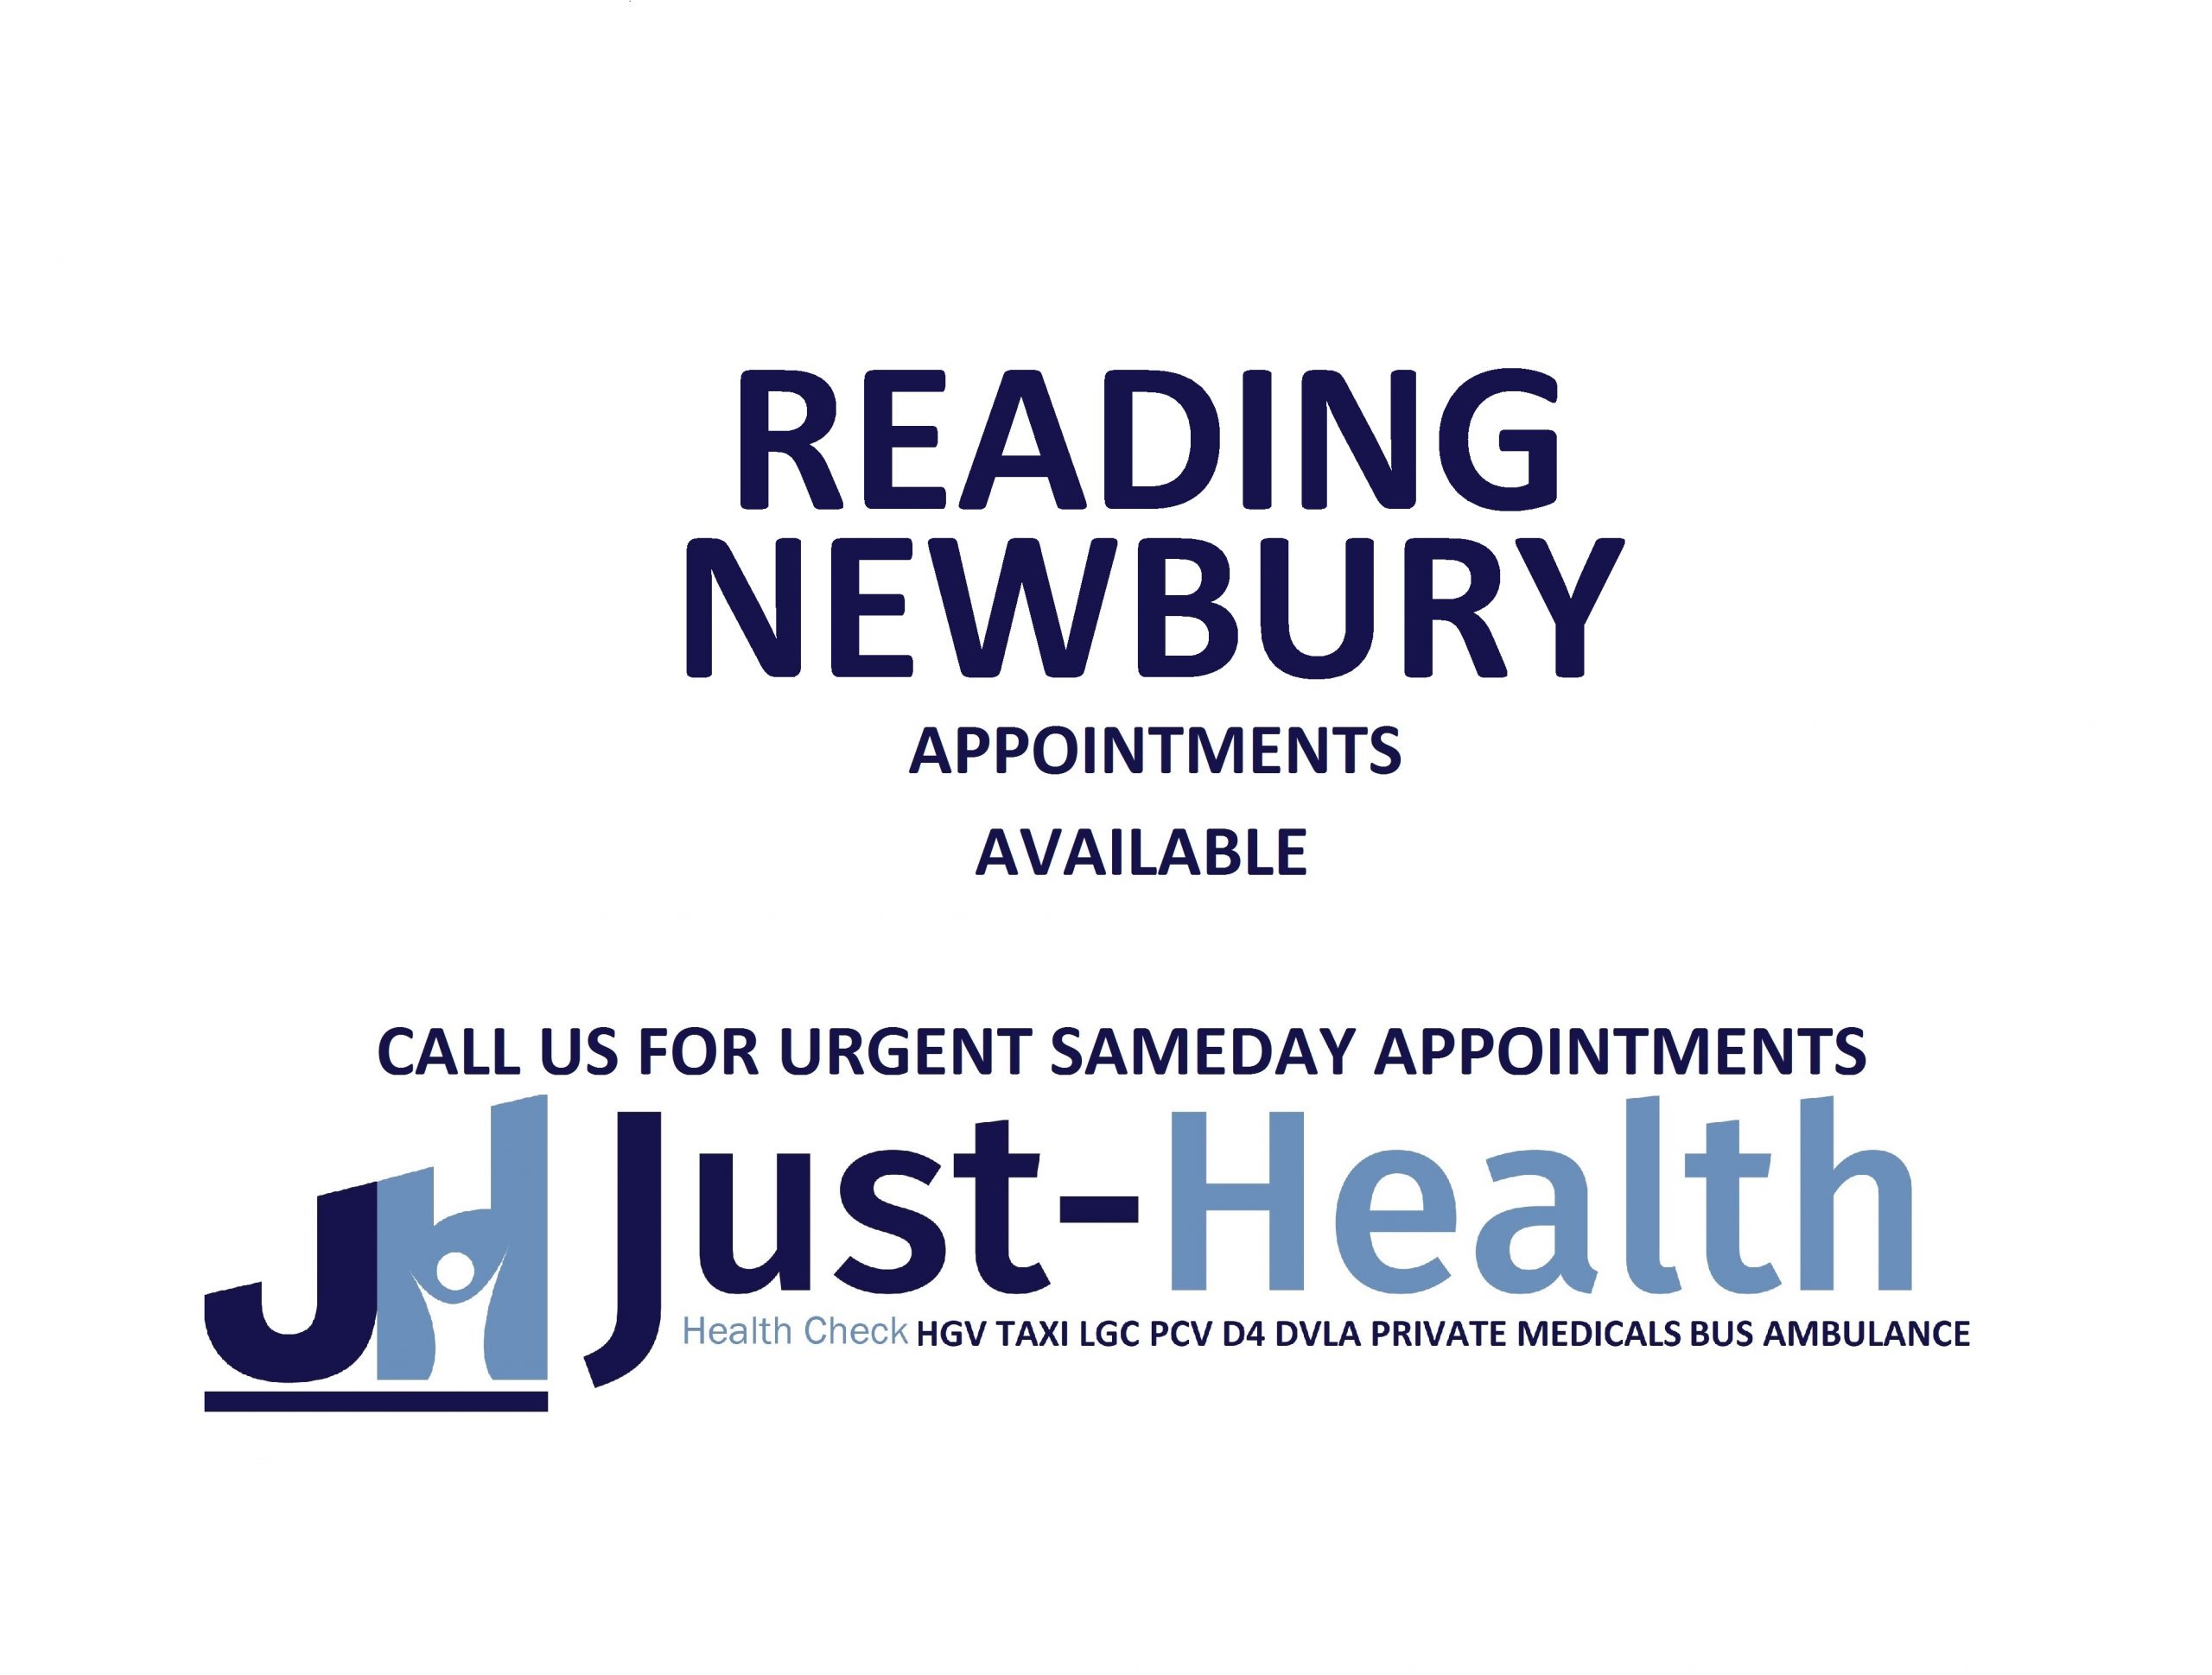 HGV Medical Reading Newbury D4 Driver